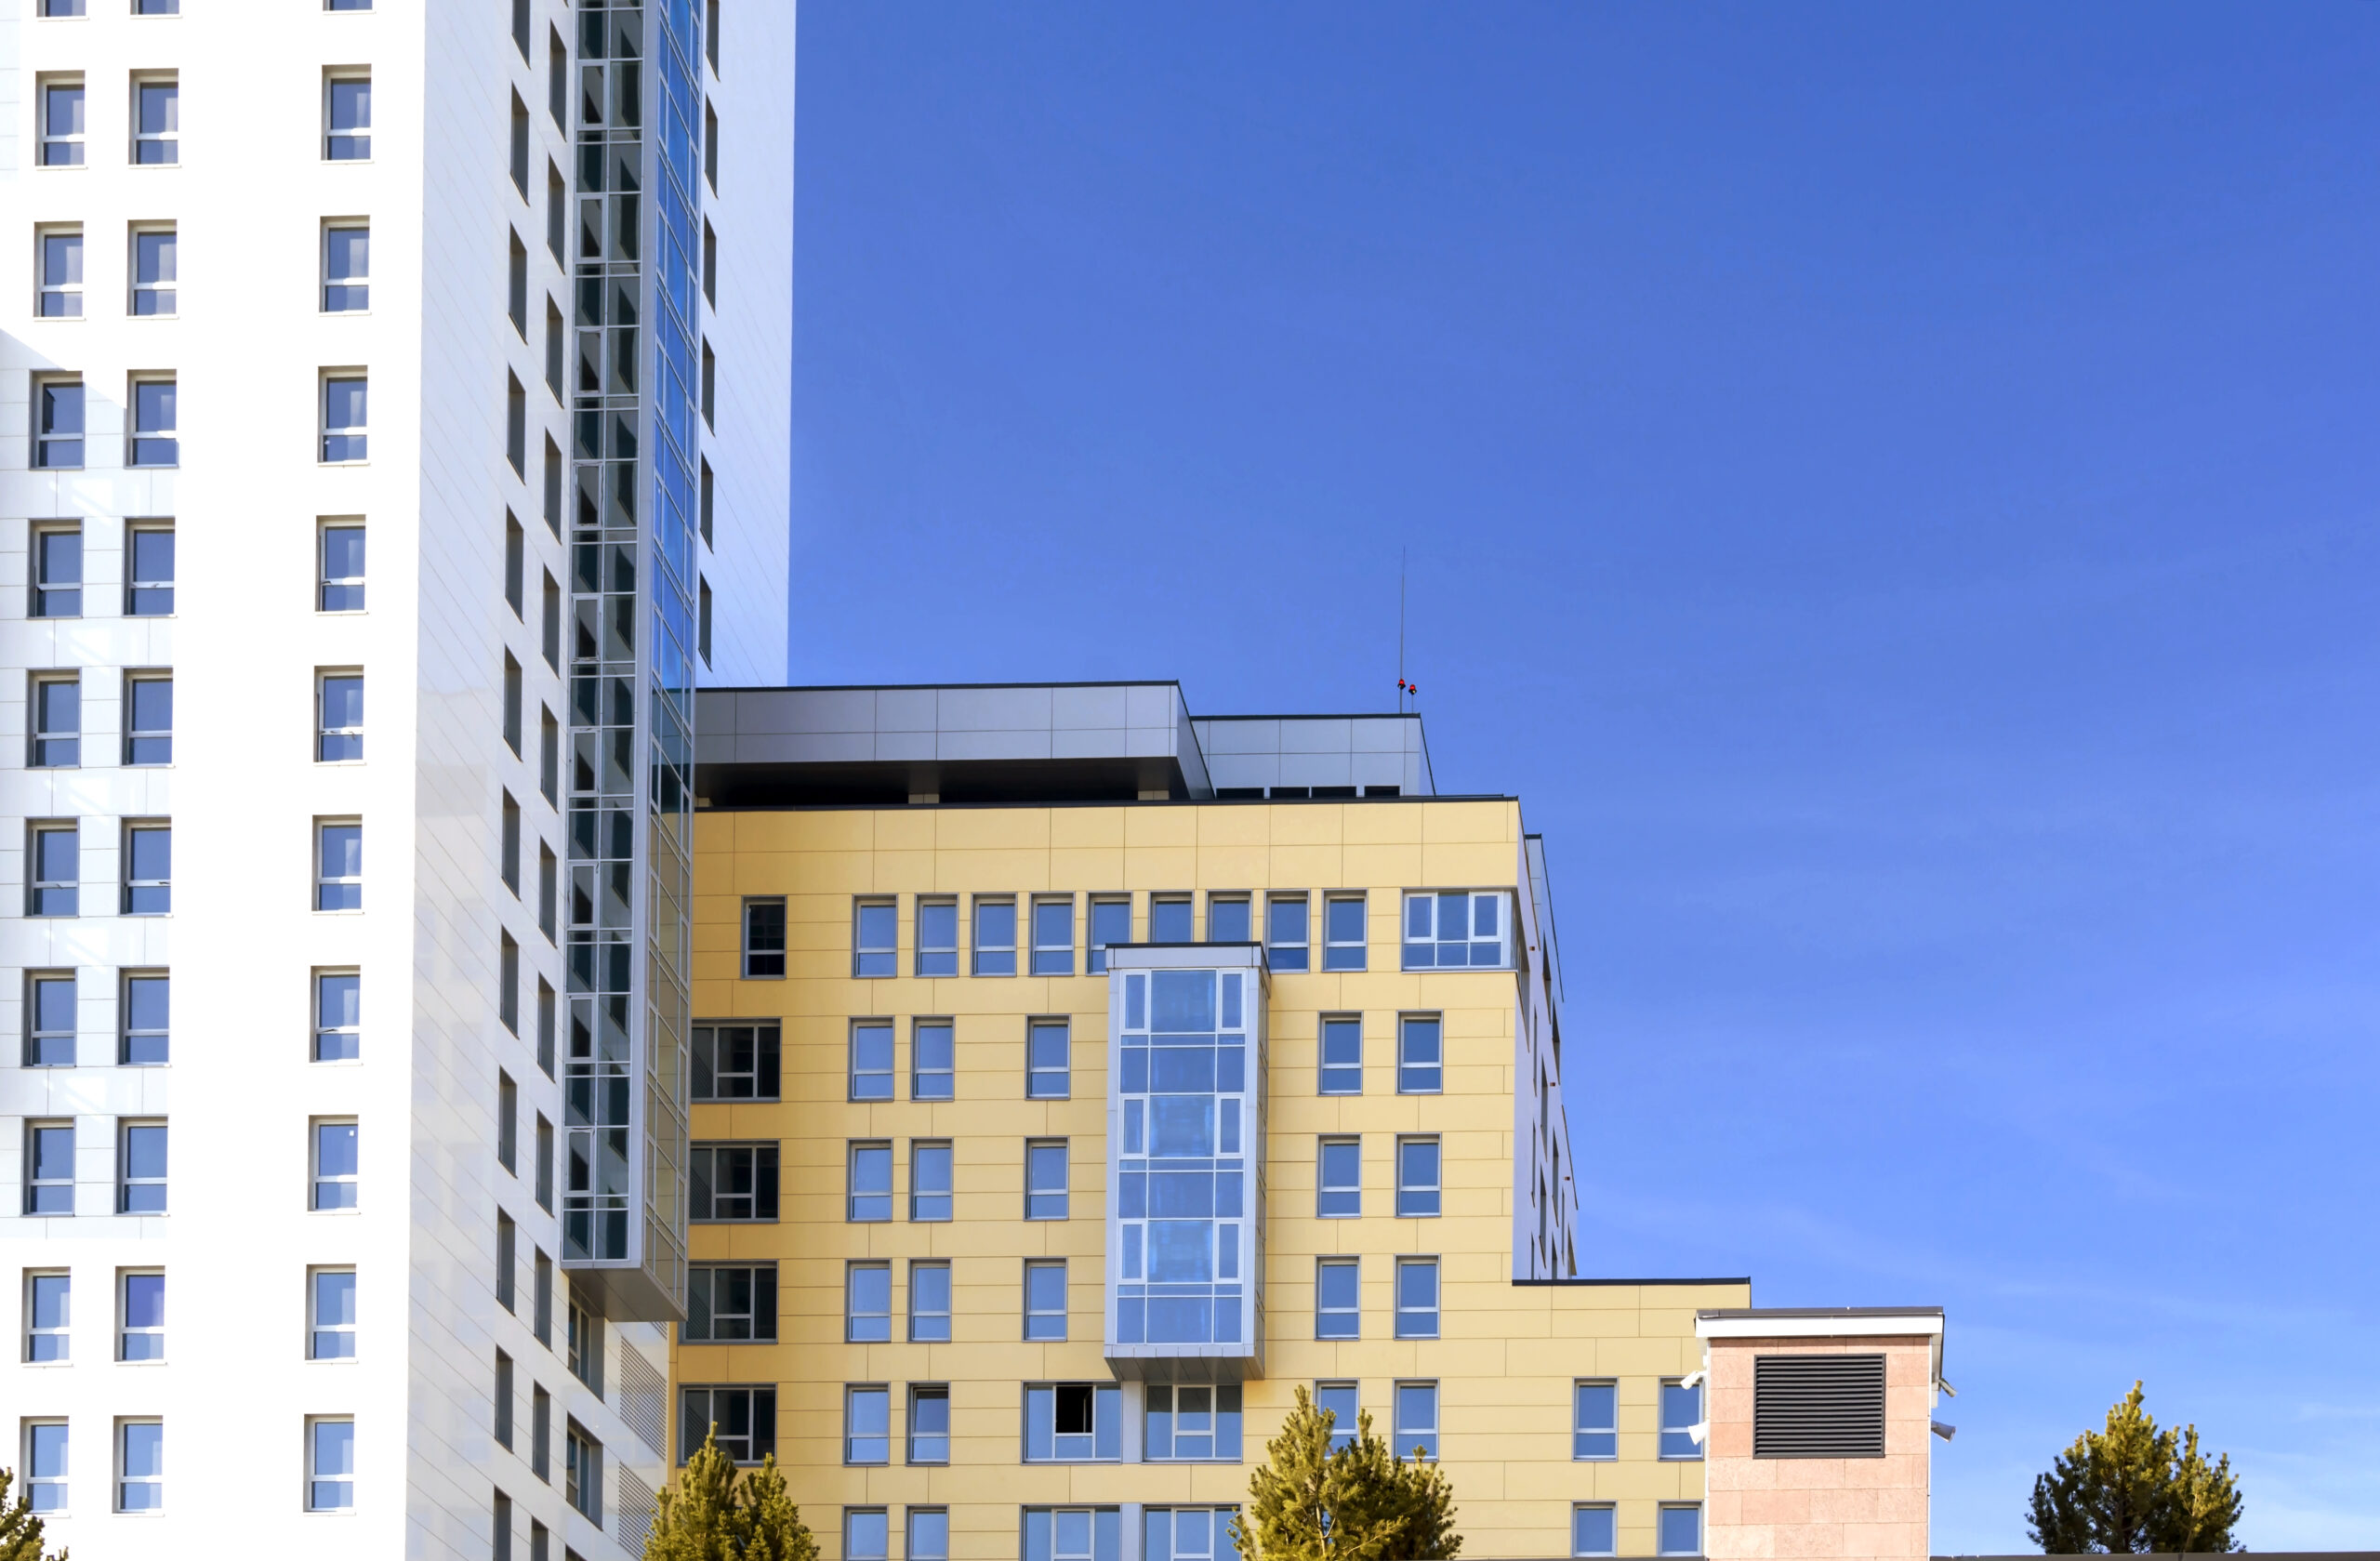 Prédio de apartamentos moderno na cidade. fachada do sol